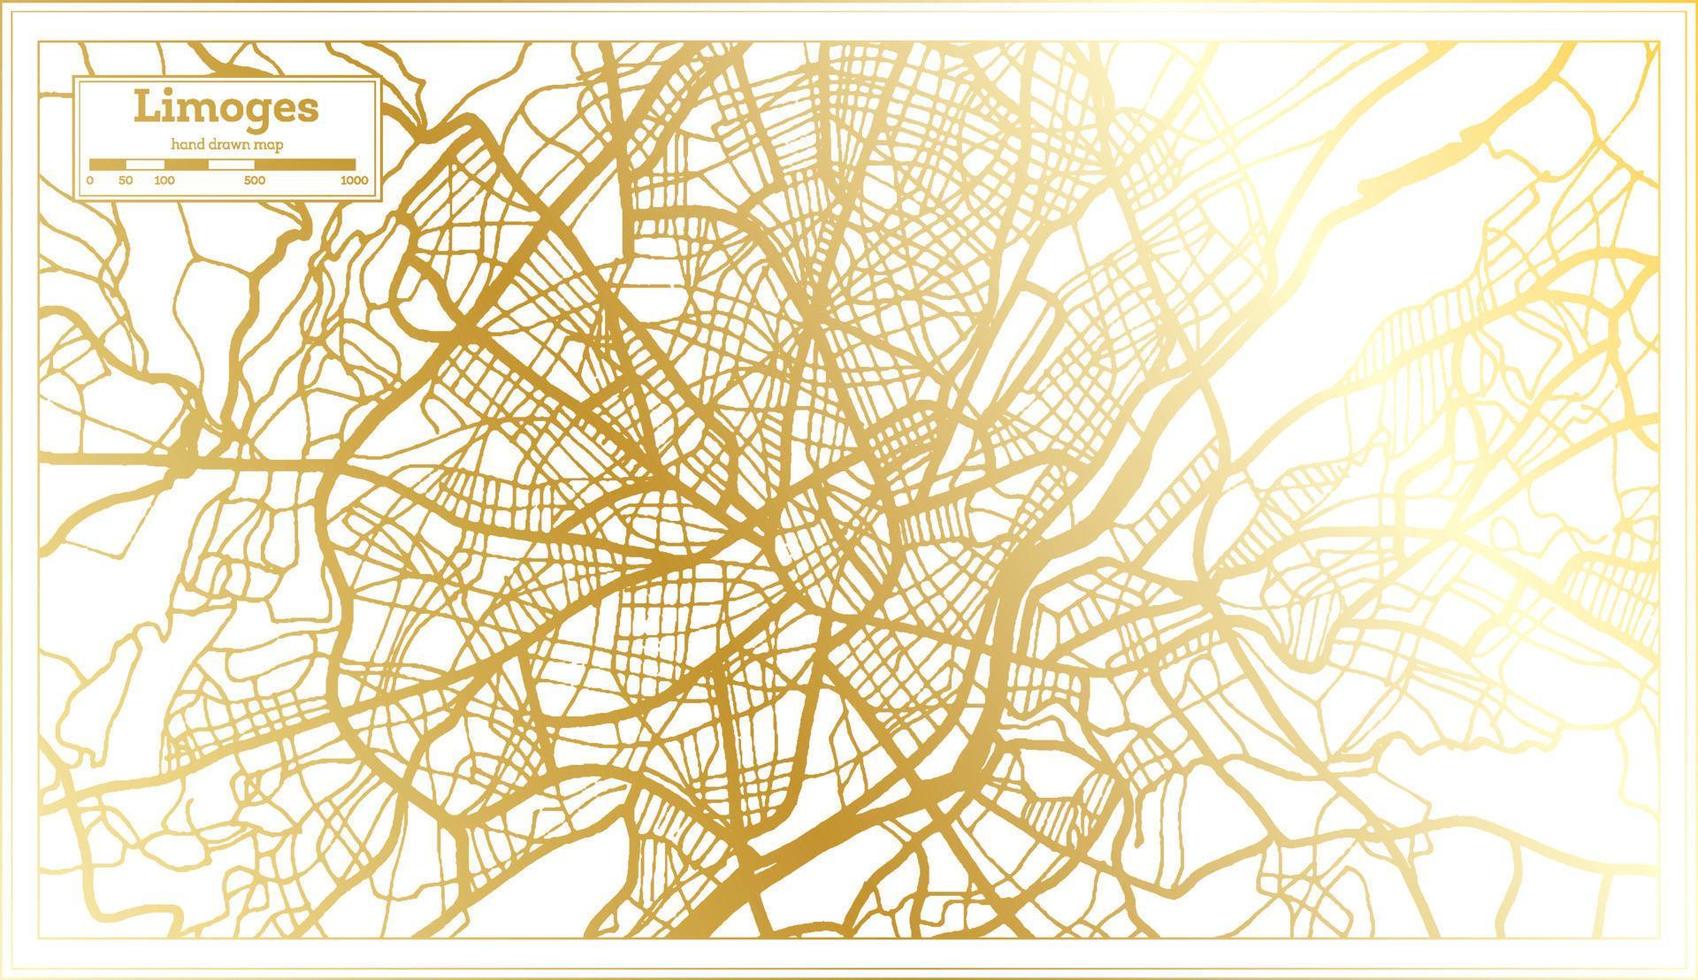 mapa de la ciudad de limoges francia en estilo retro en color dorado. esquema del mapa. vector